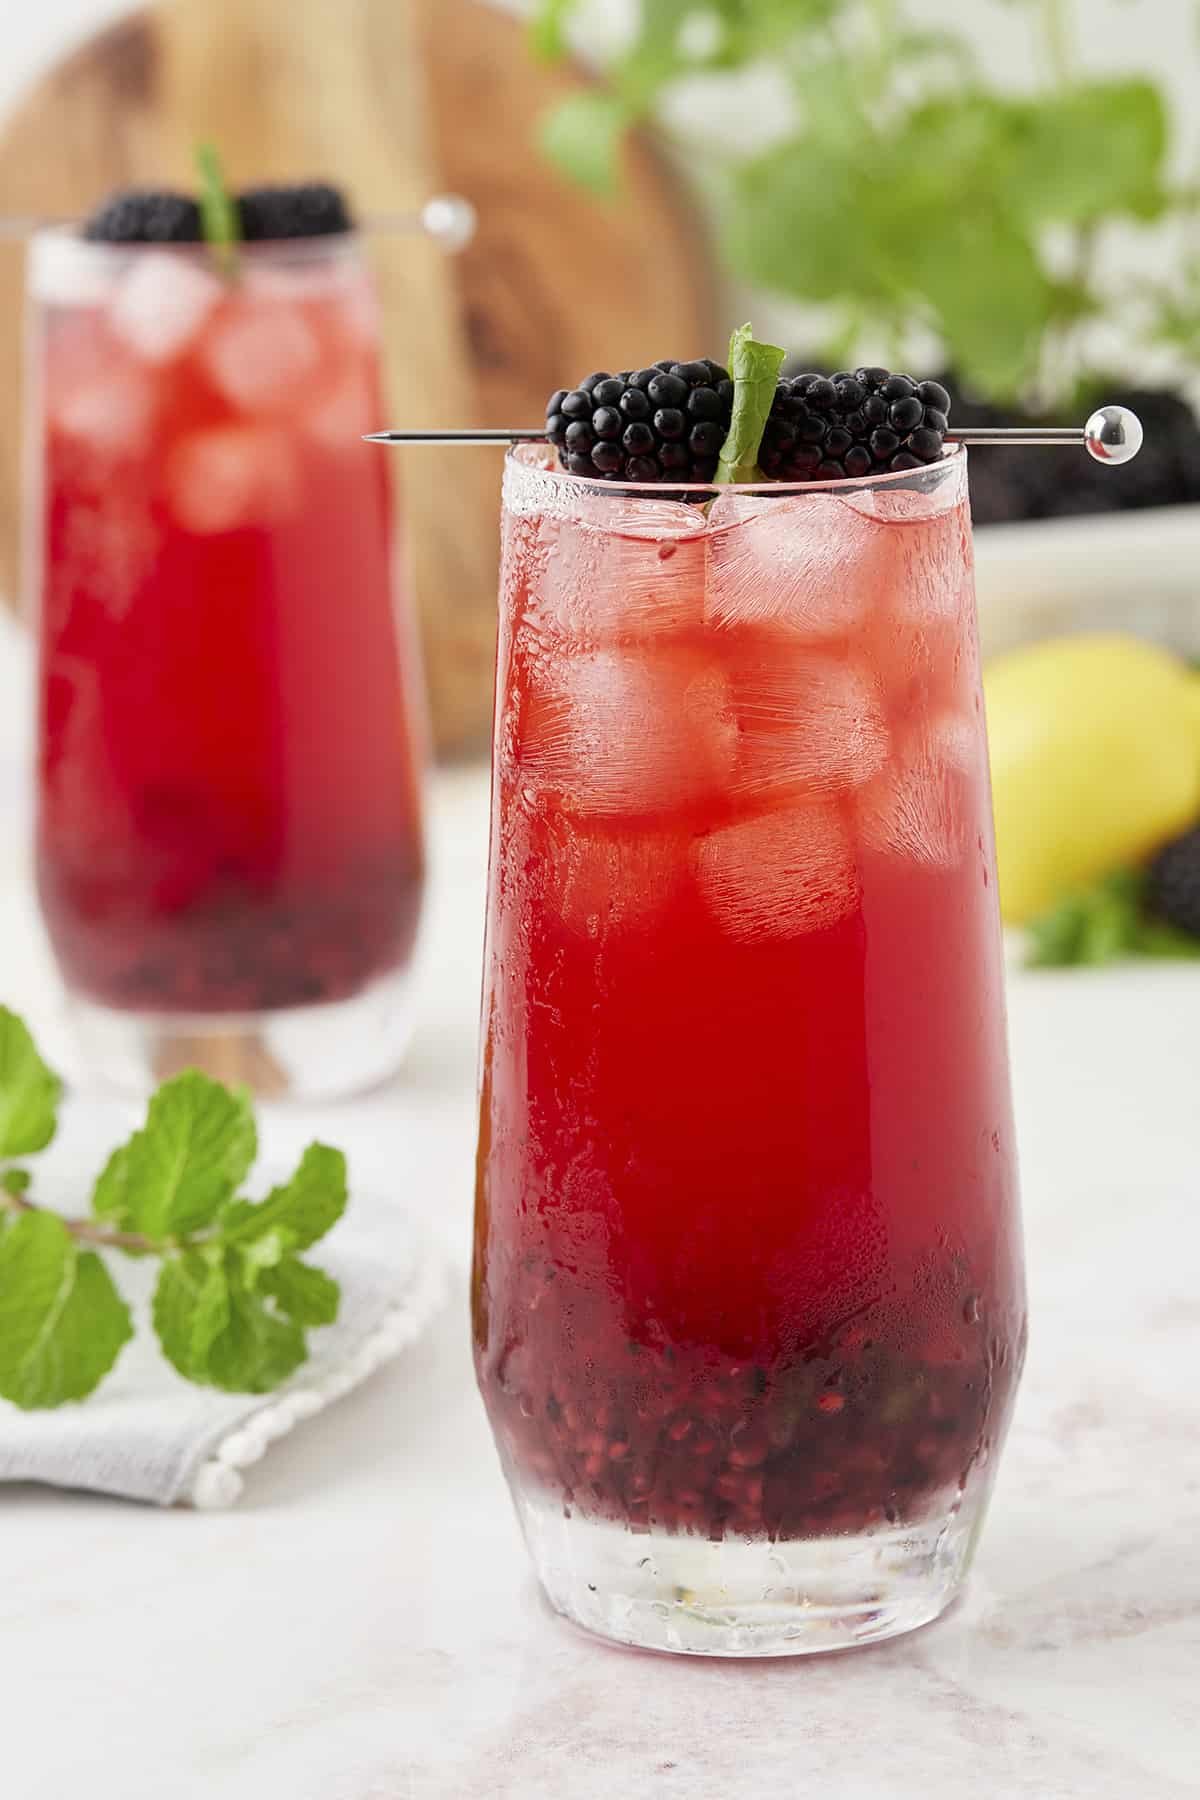 Blackberry mojito recipe in highball glasses.